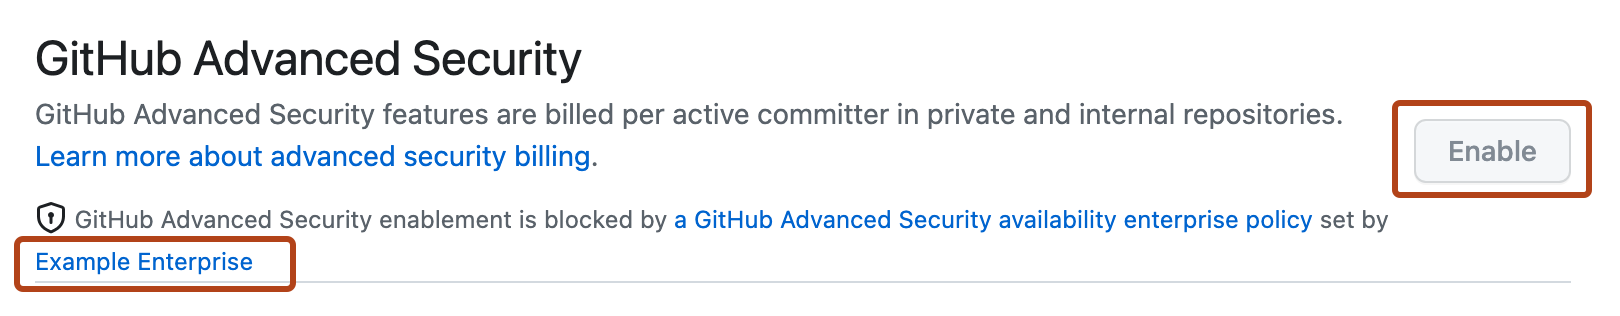 Captura de tela da configuração de "GitHub Advanced Security". O proprietário da política corporativa e o botão "Habilitar" inativo estão realçados com uma estrutura de tópicos laranja escura.